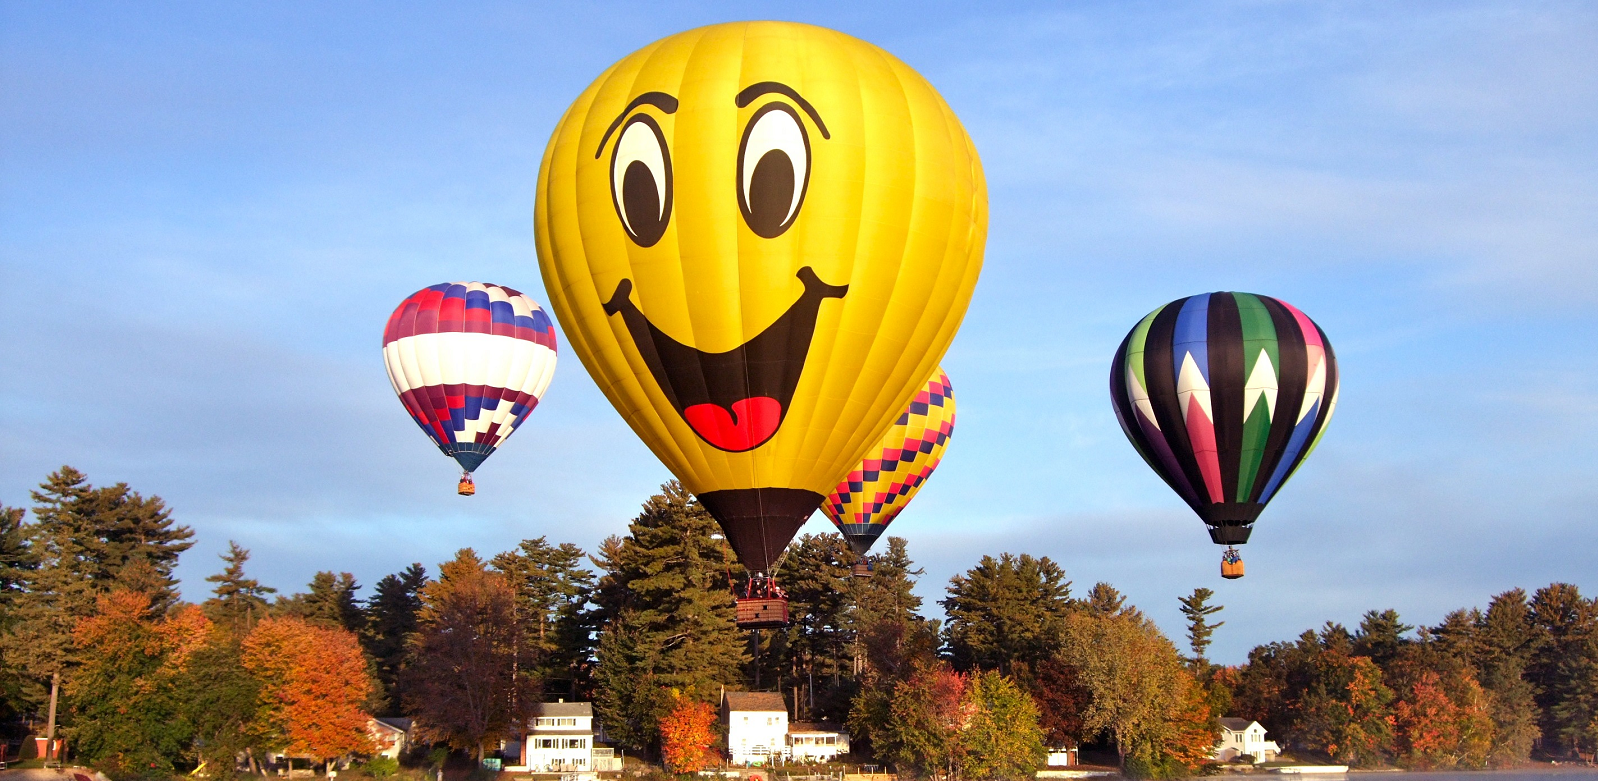 Hot Air Balloons , HD Wallpaper & Backgrounds